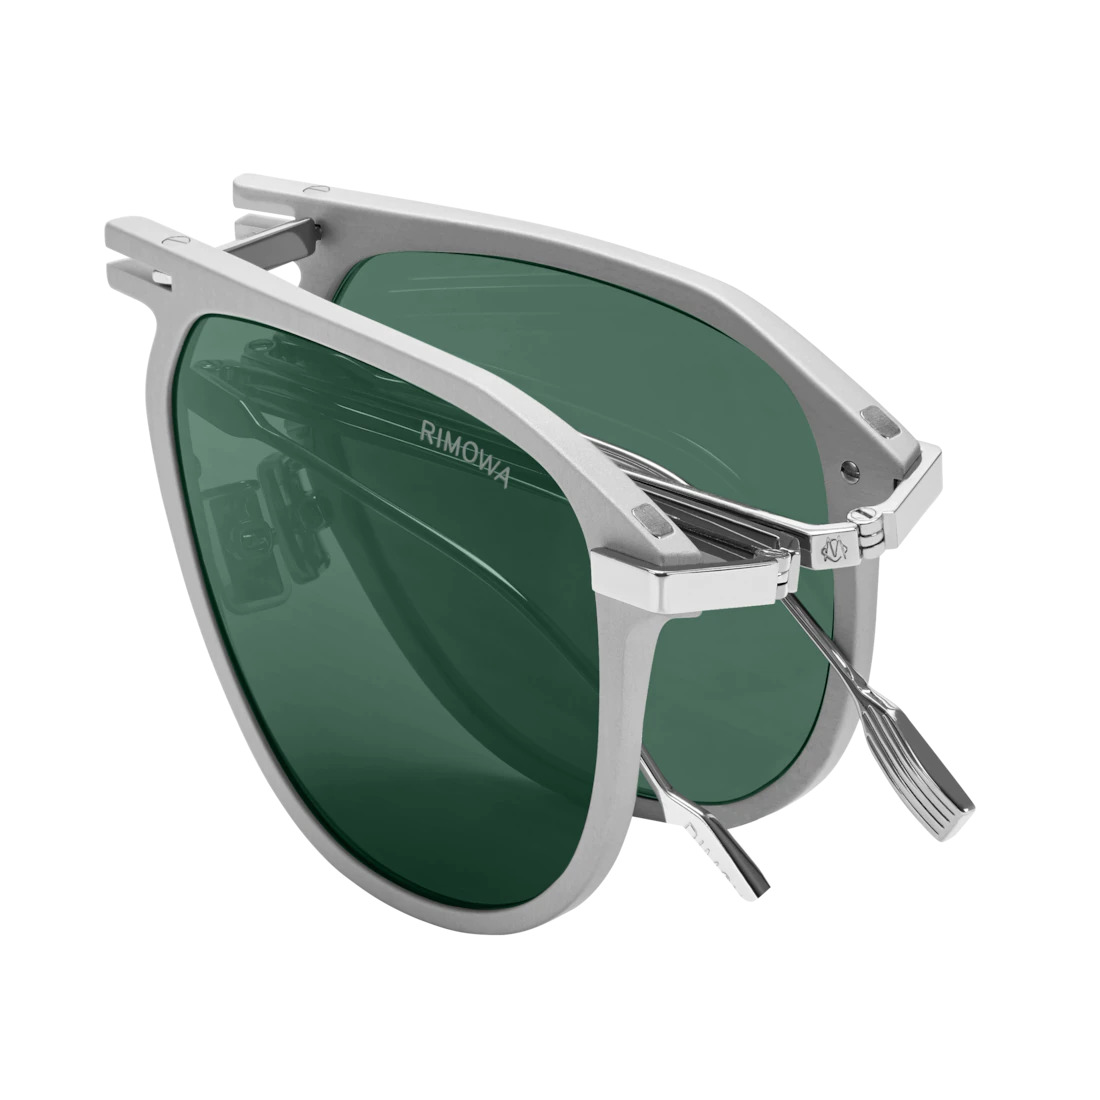 Eyewear Pilot Foldable Matte Silver Sunglasses - 3